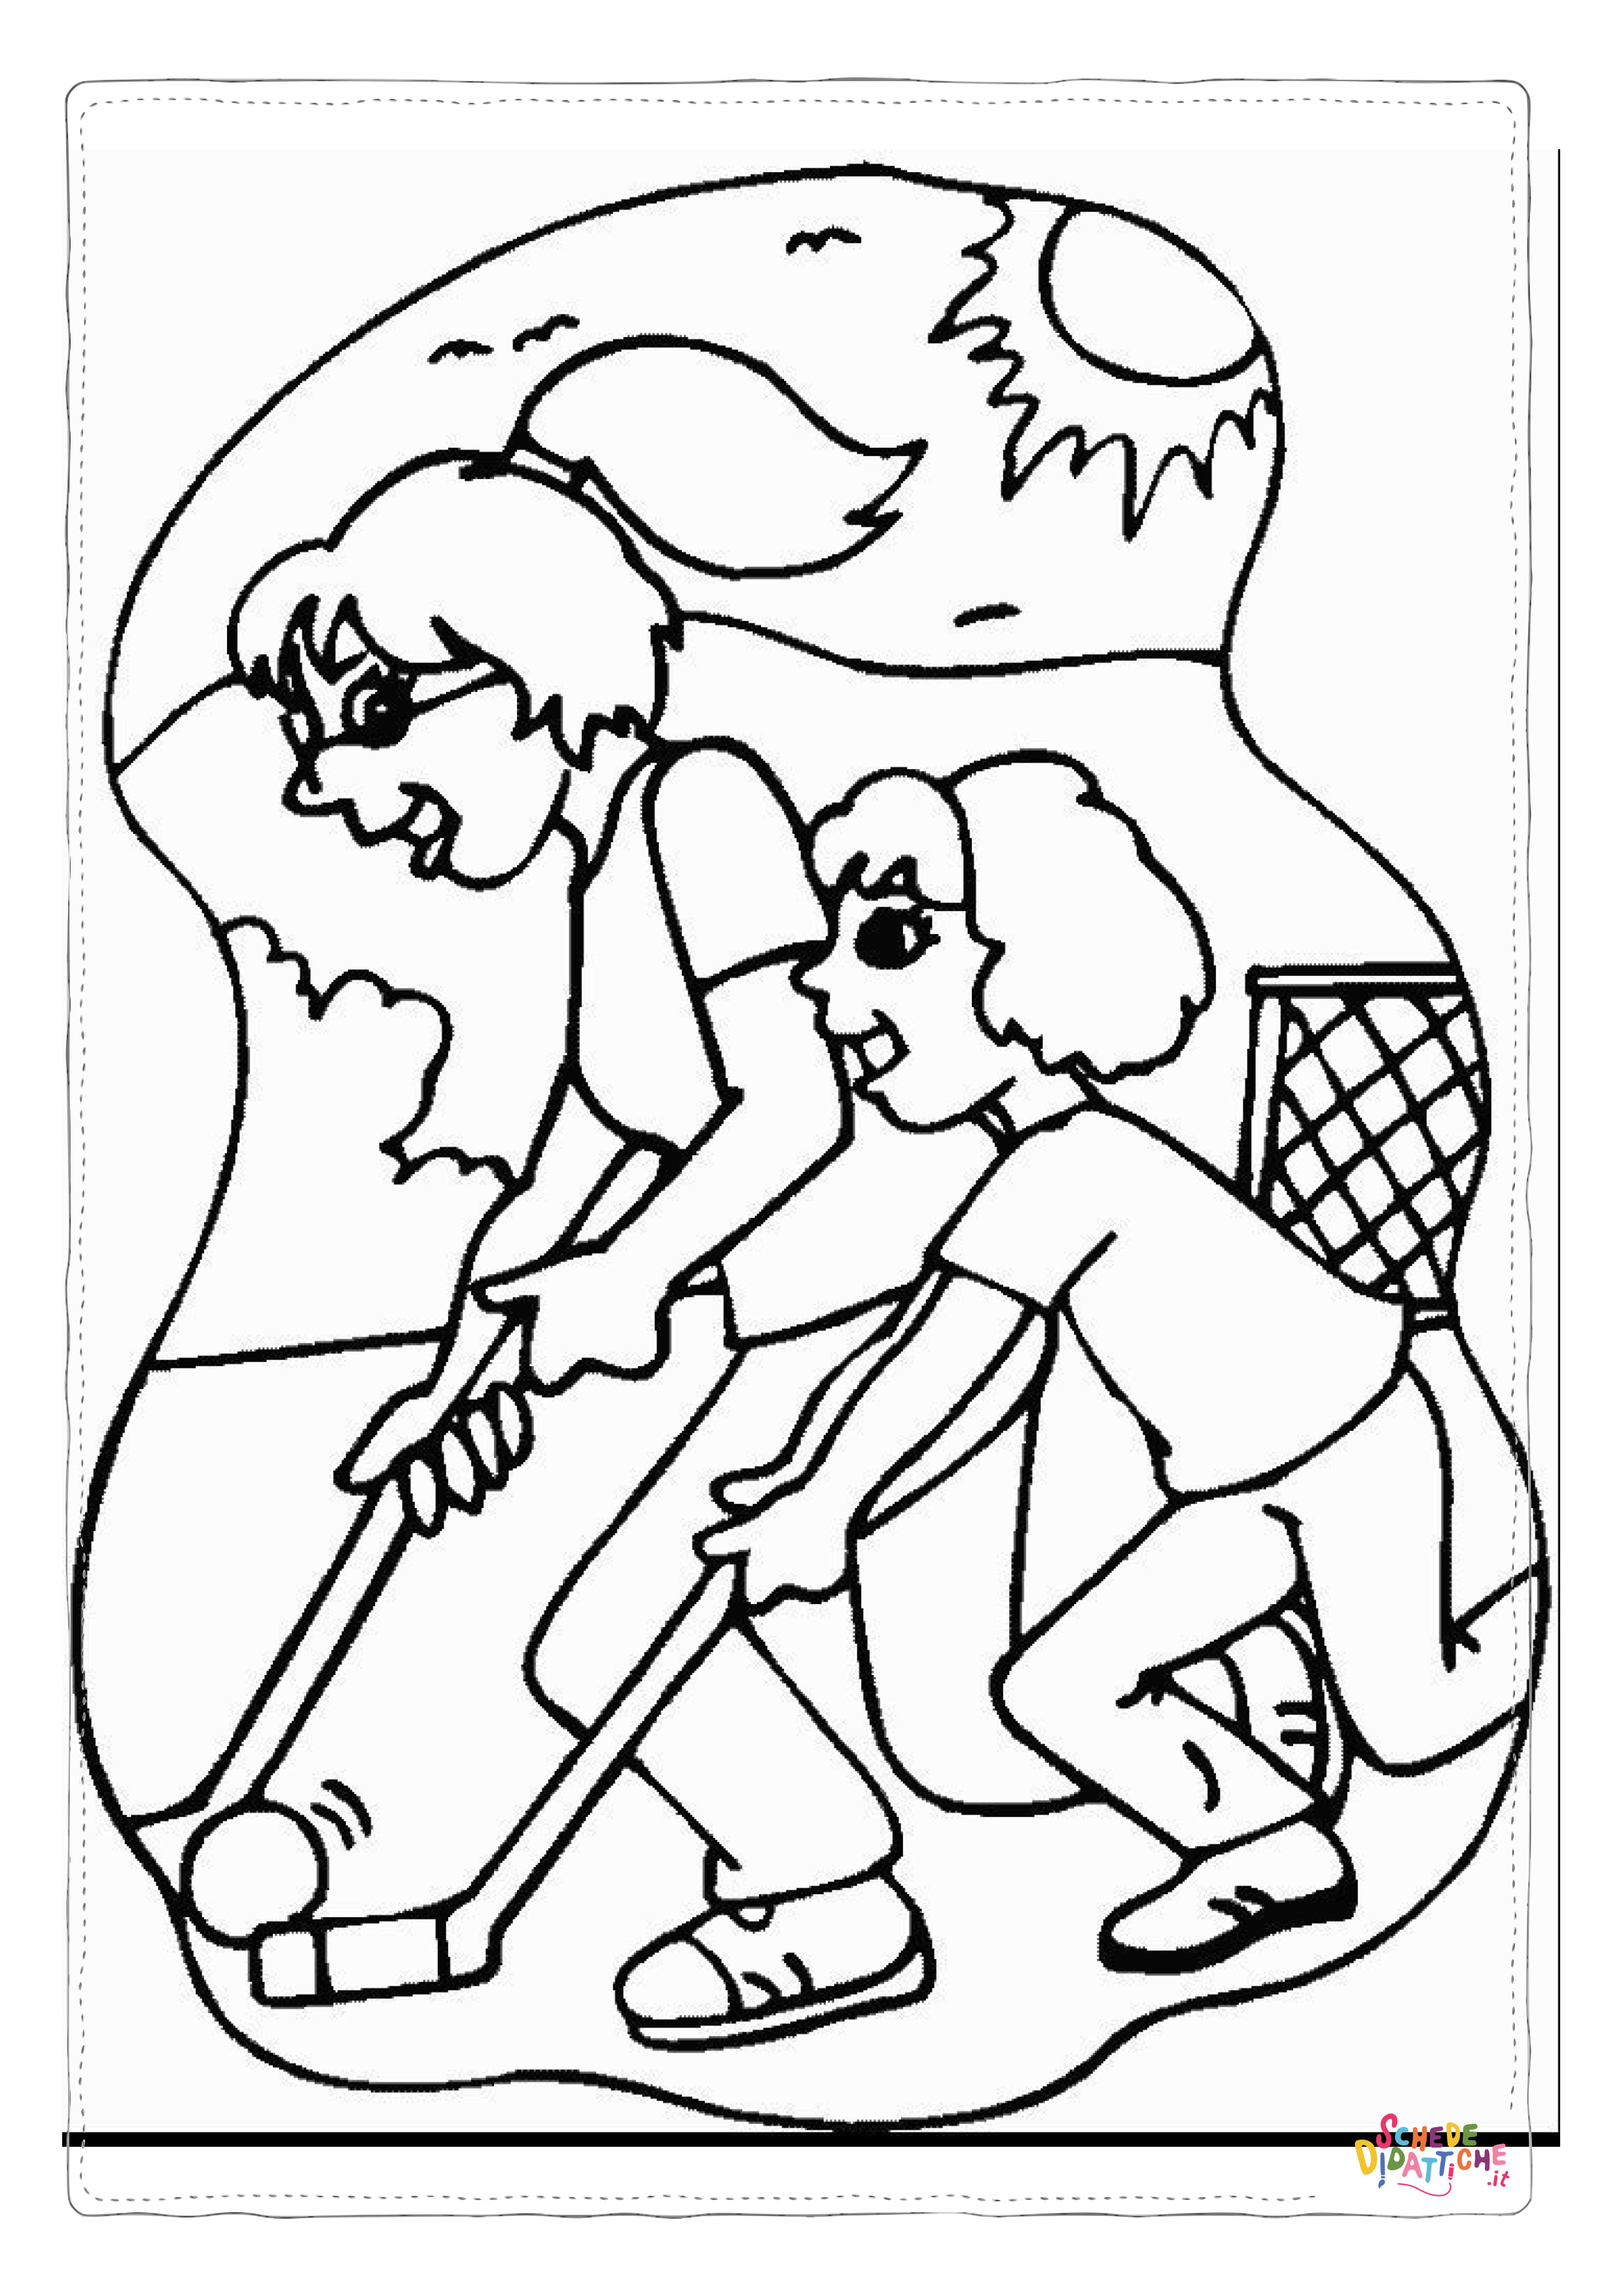 Disegno di hockey da stampare e colorare 12